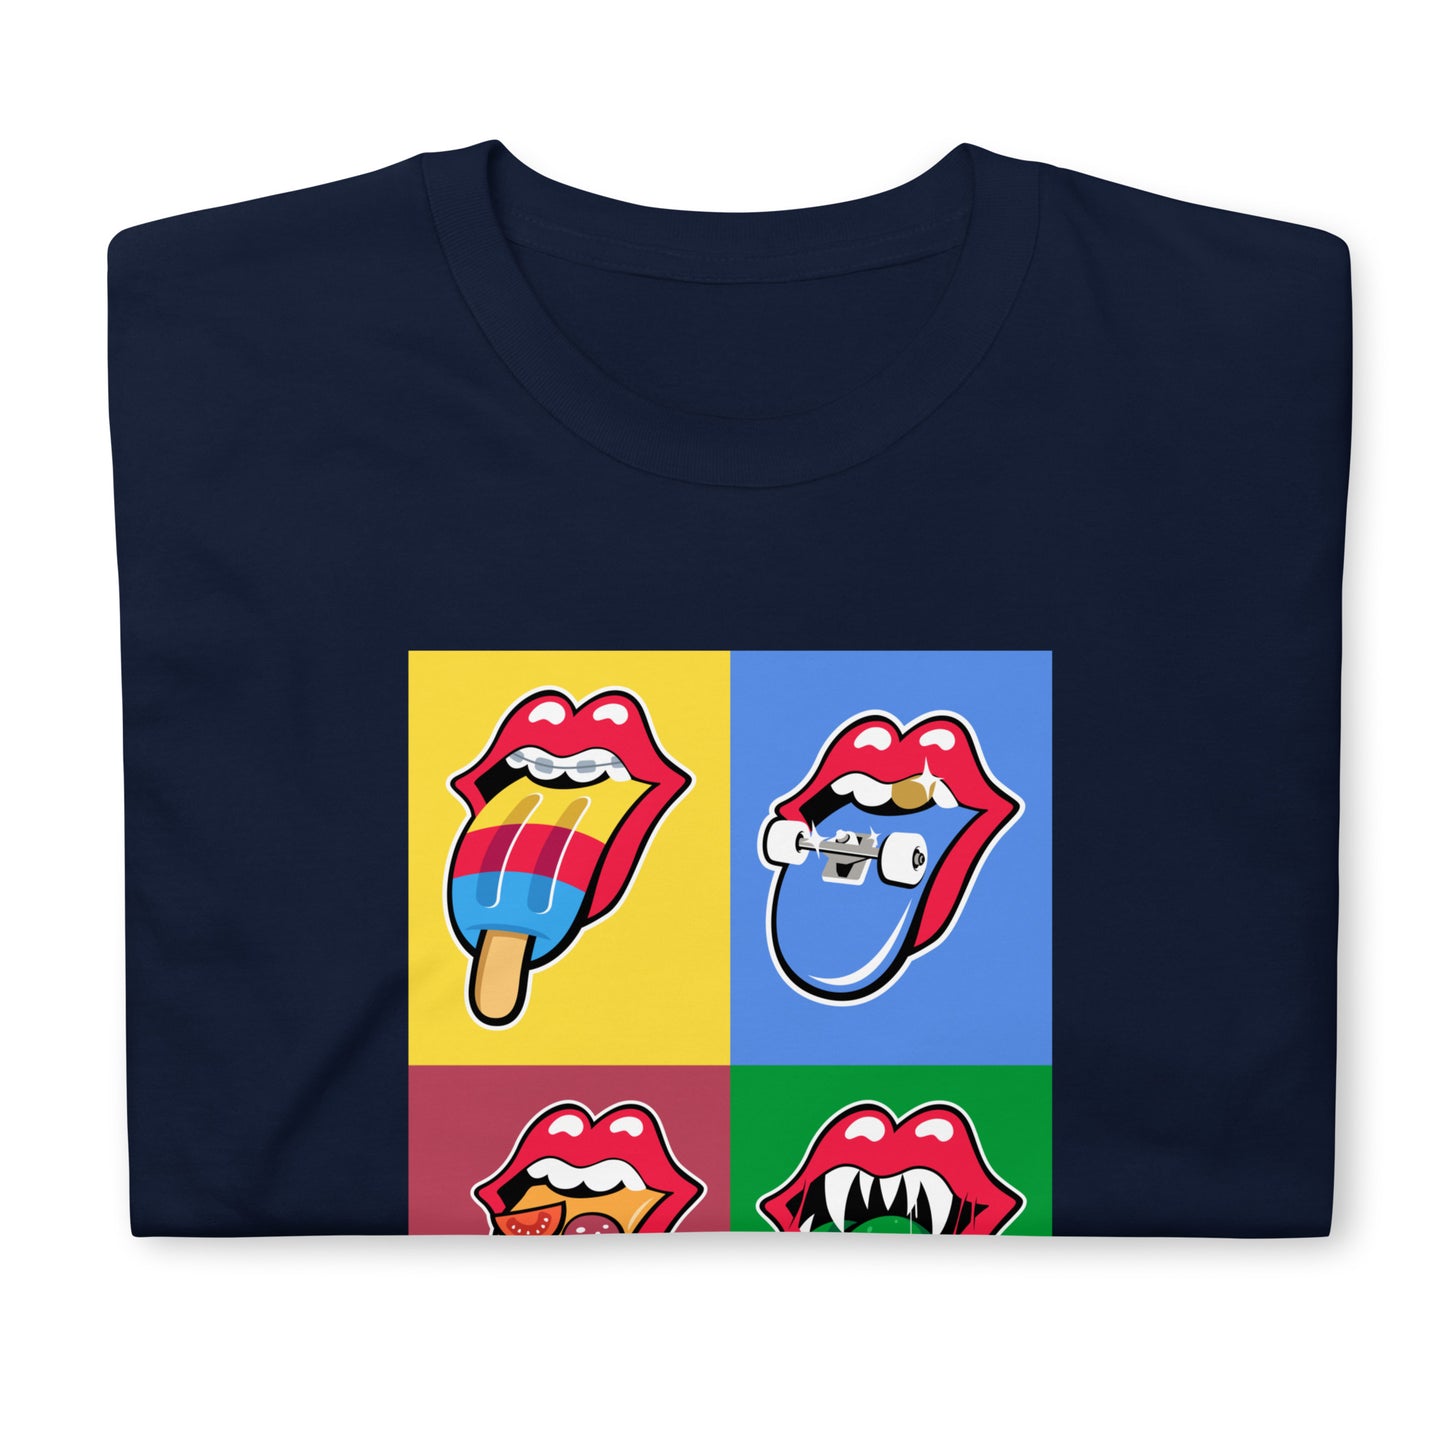 Rolling Stones Parody Pop Culture Unisex T-Shirt